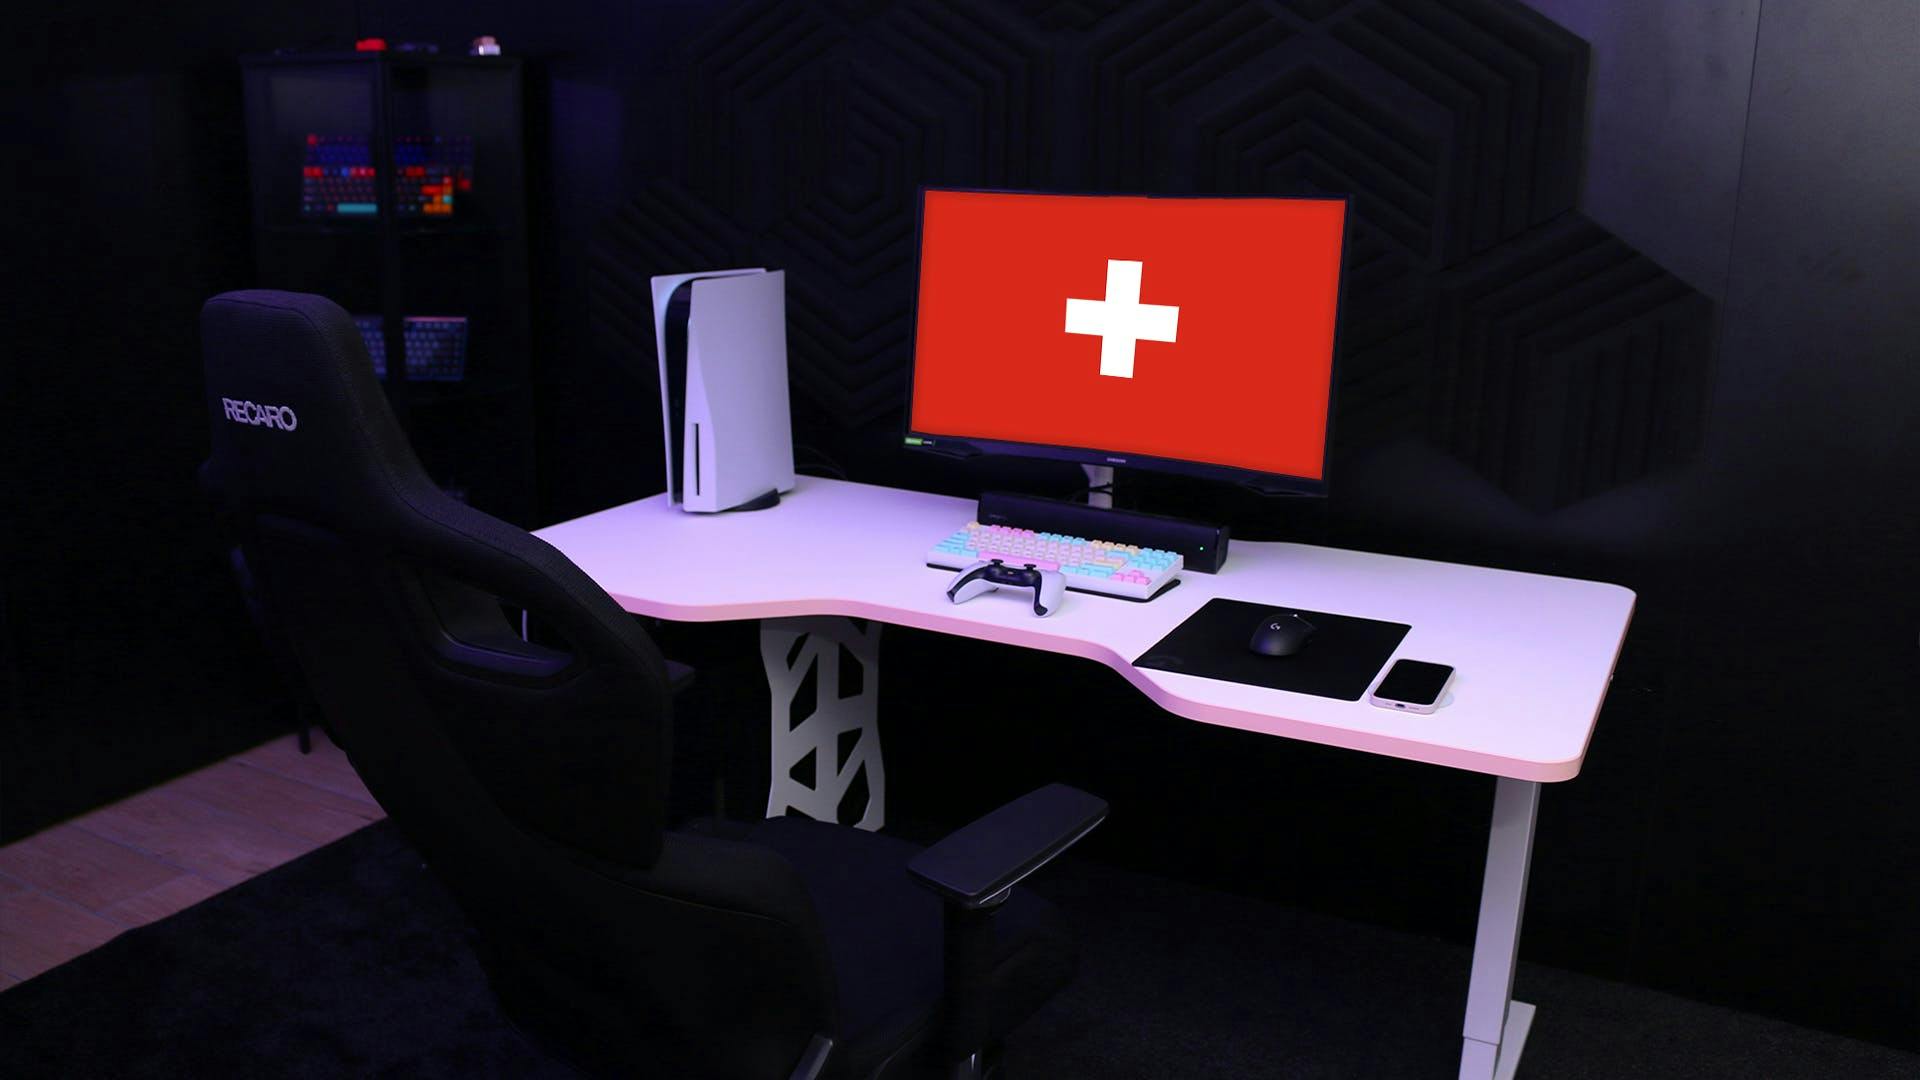 Un LeetDesk Light bianco in una stanza nera con la bandiera svizzera su un monitor.